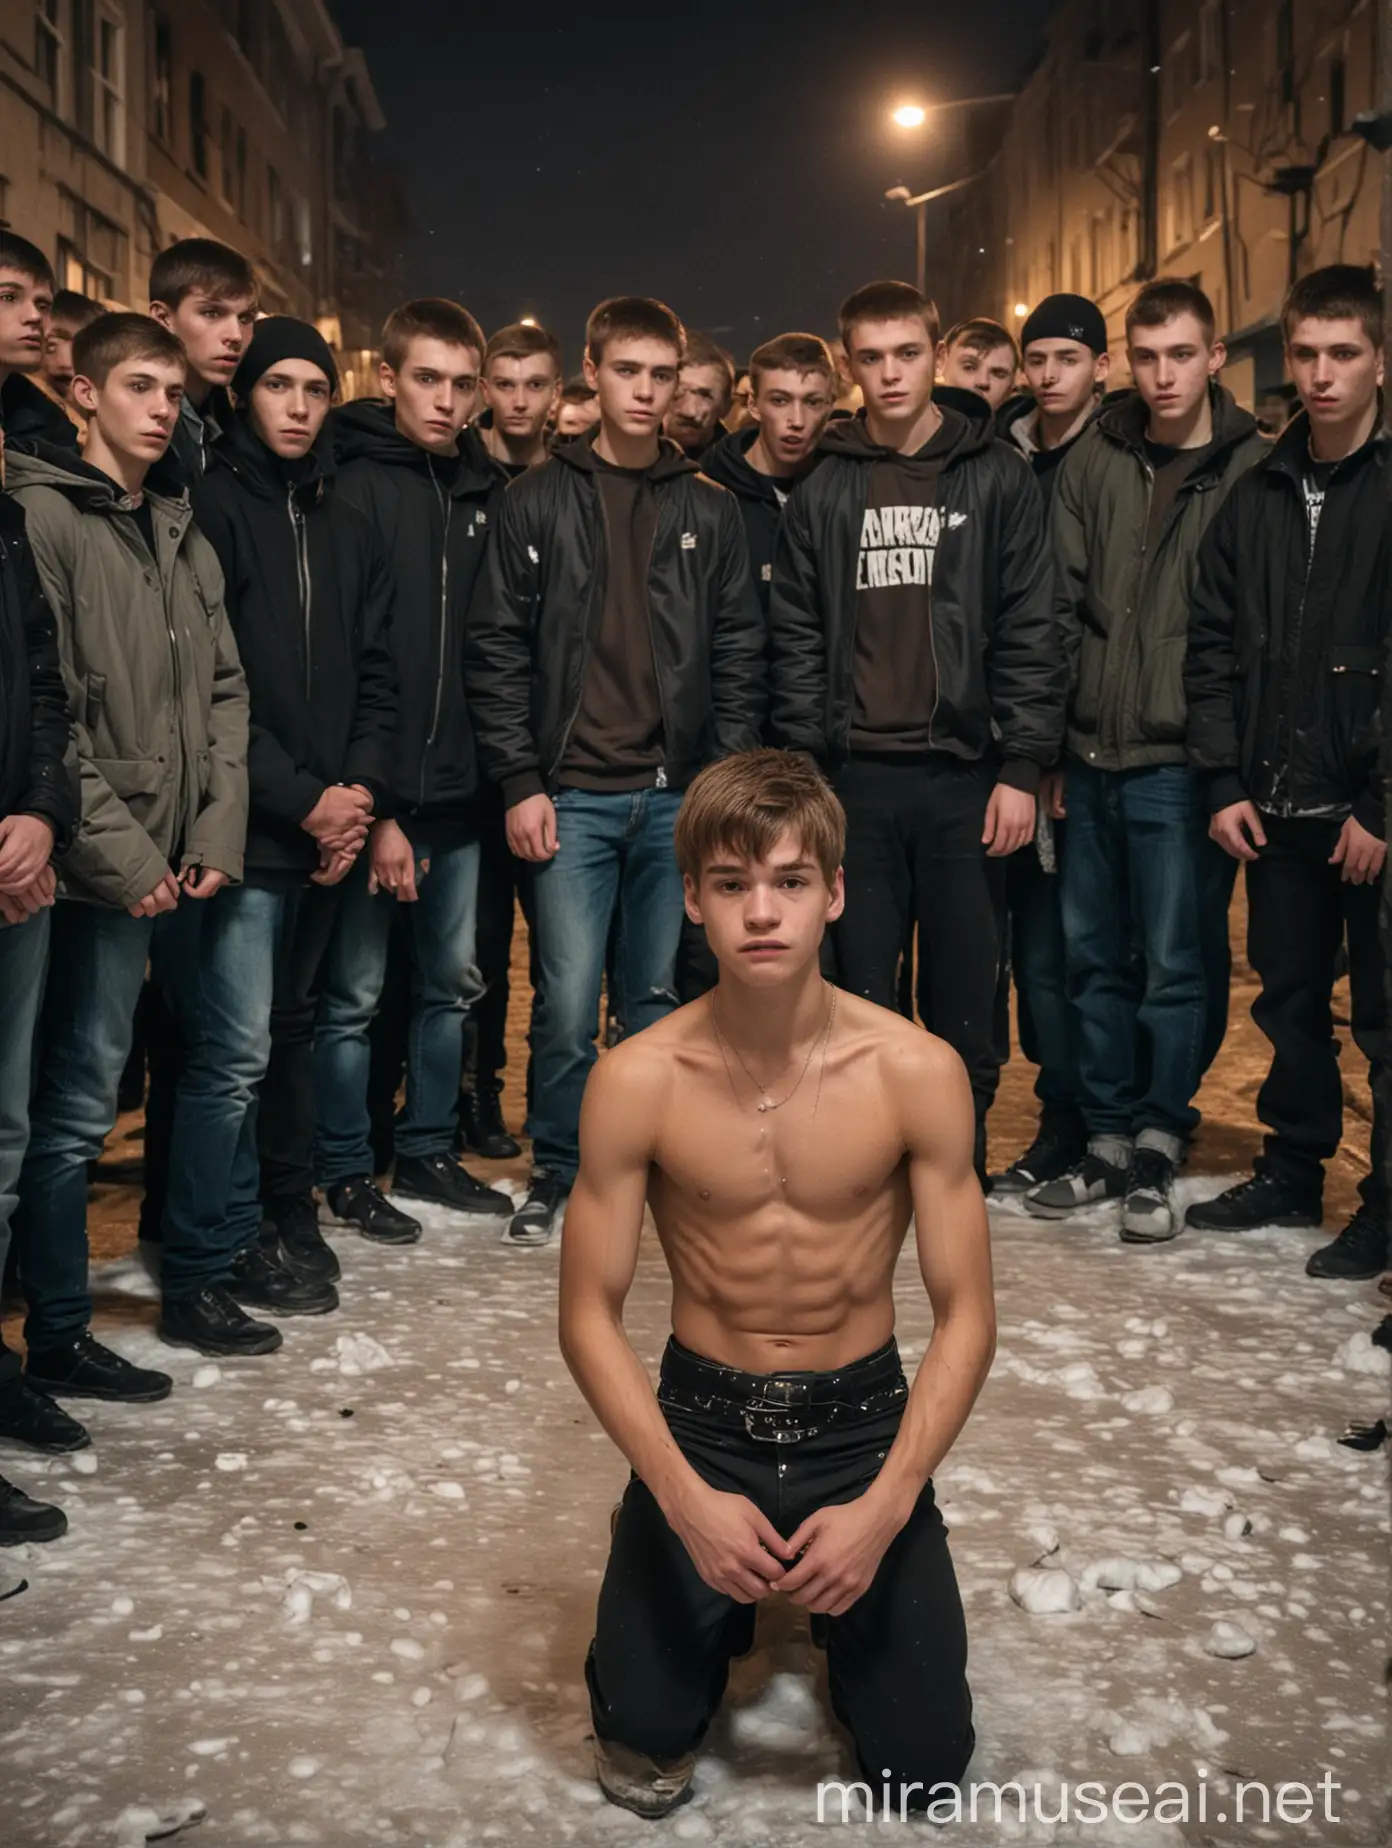 18 jähriger Twink, mit schlanken sixpack, zittert vor Angst, kniet vor Gruppe jugendlicher Peiniger, ein Peiniger schwingt Gürtel in der Hand, Hintergrund Armenviertel in St. Petersburg im Winter und bei Nacht.